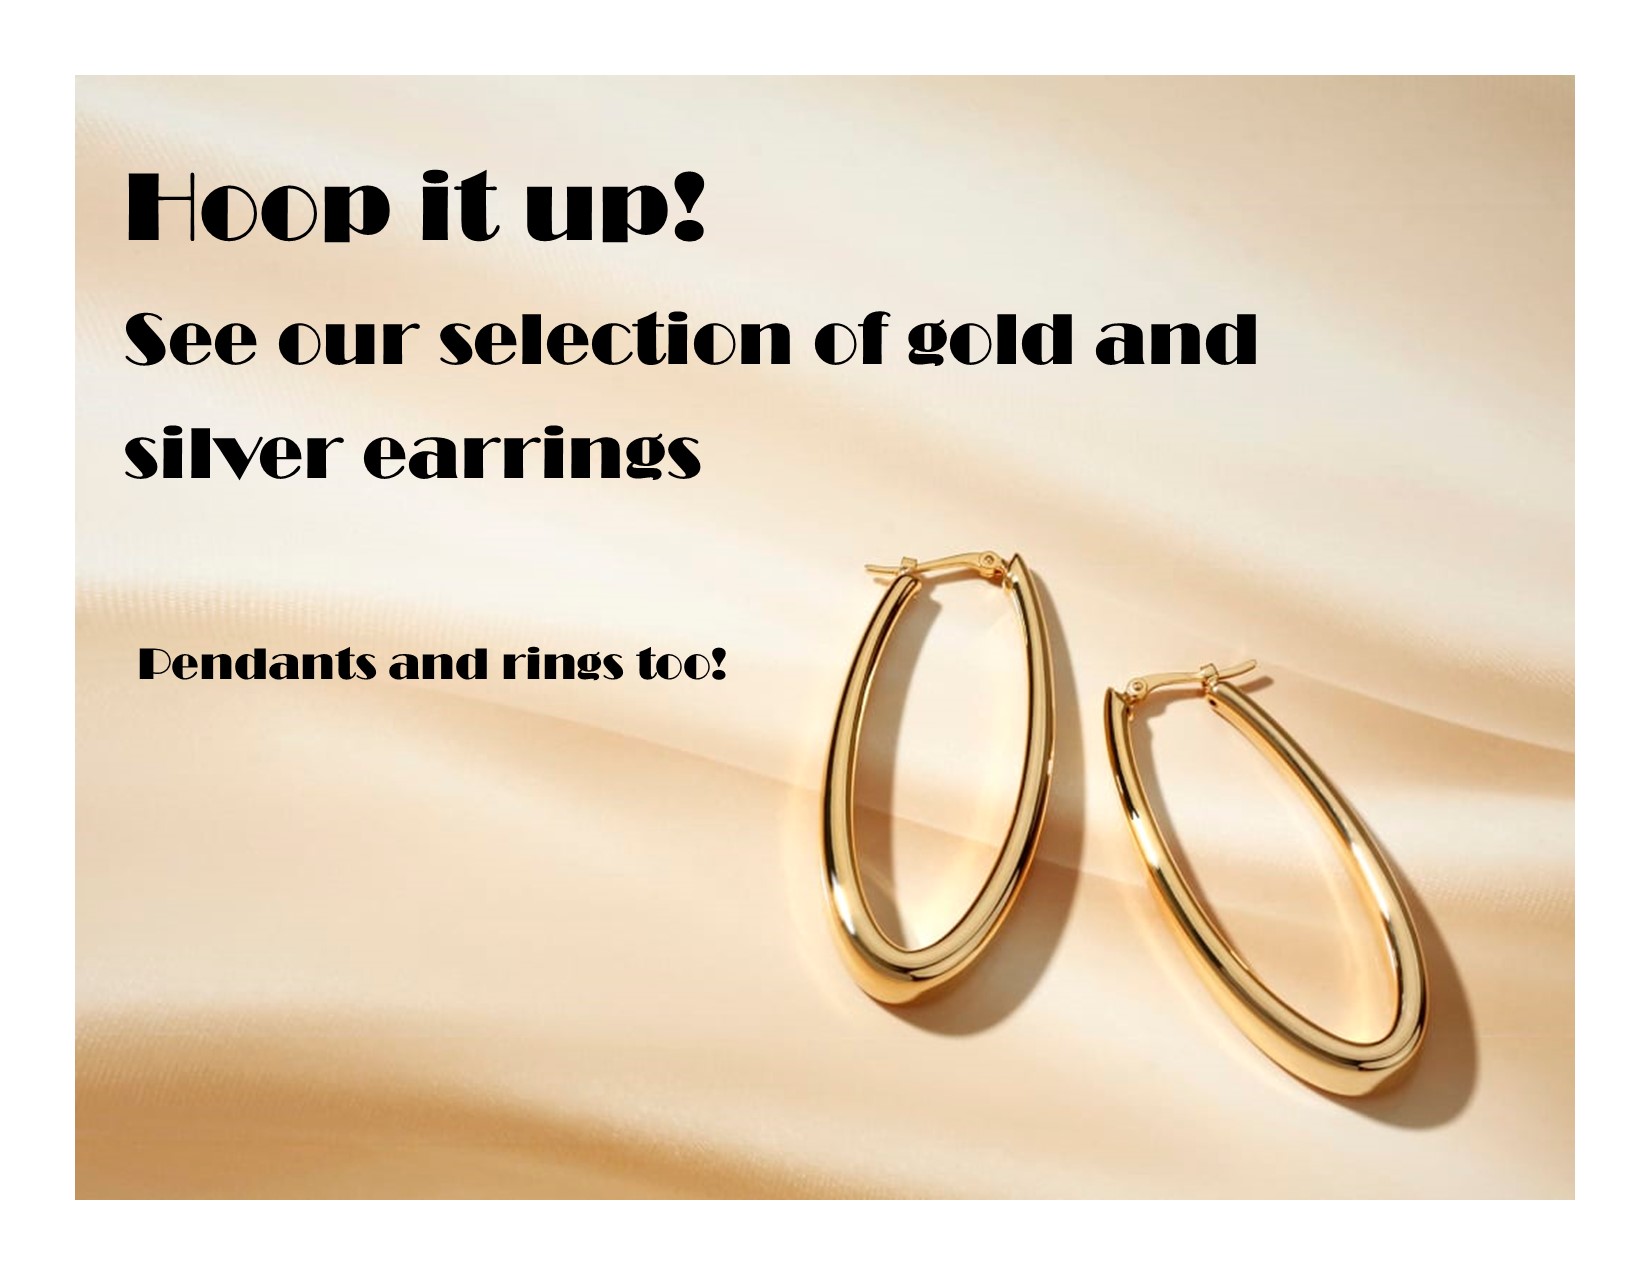 Image of gold hoop earrings